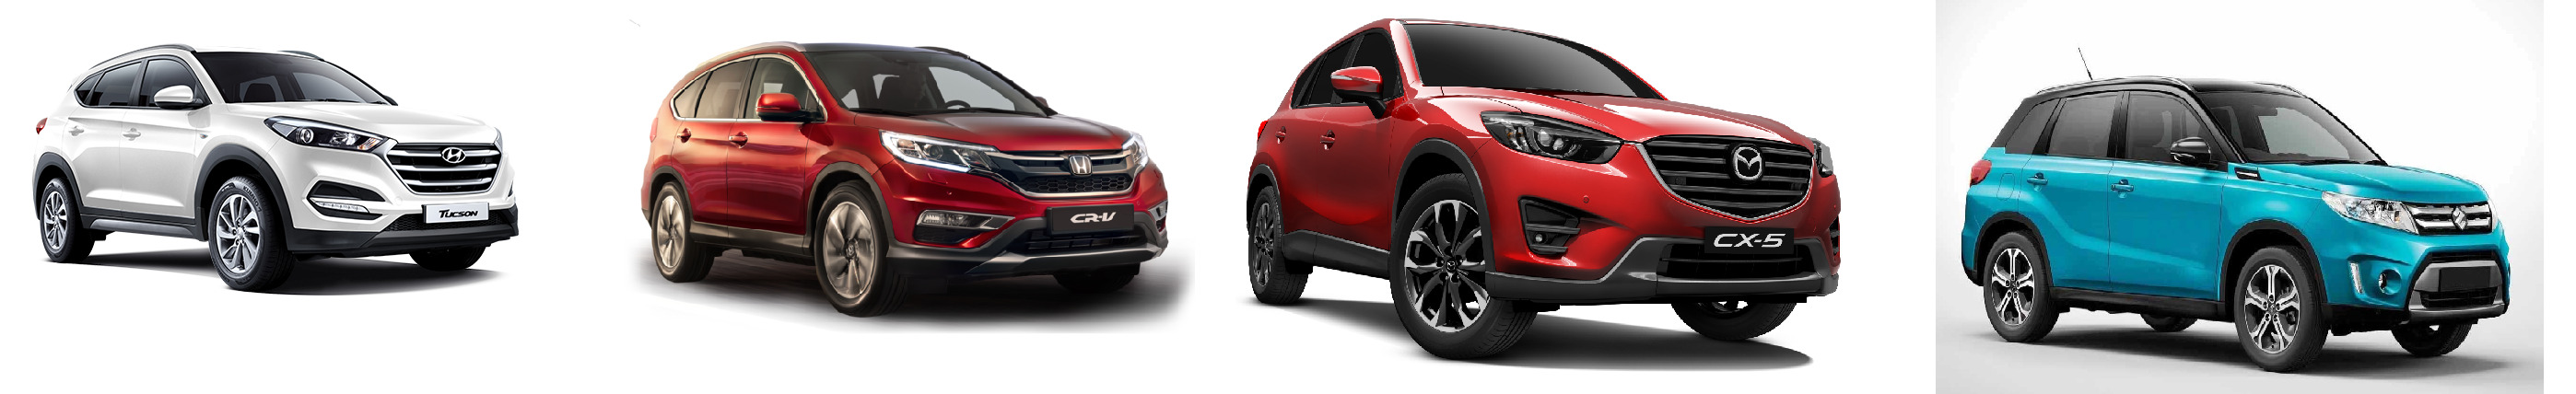 So sánh 4 mẫu xe crossover được yêu thích nhất trên thị trường Việt Nam